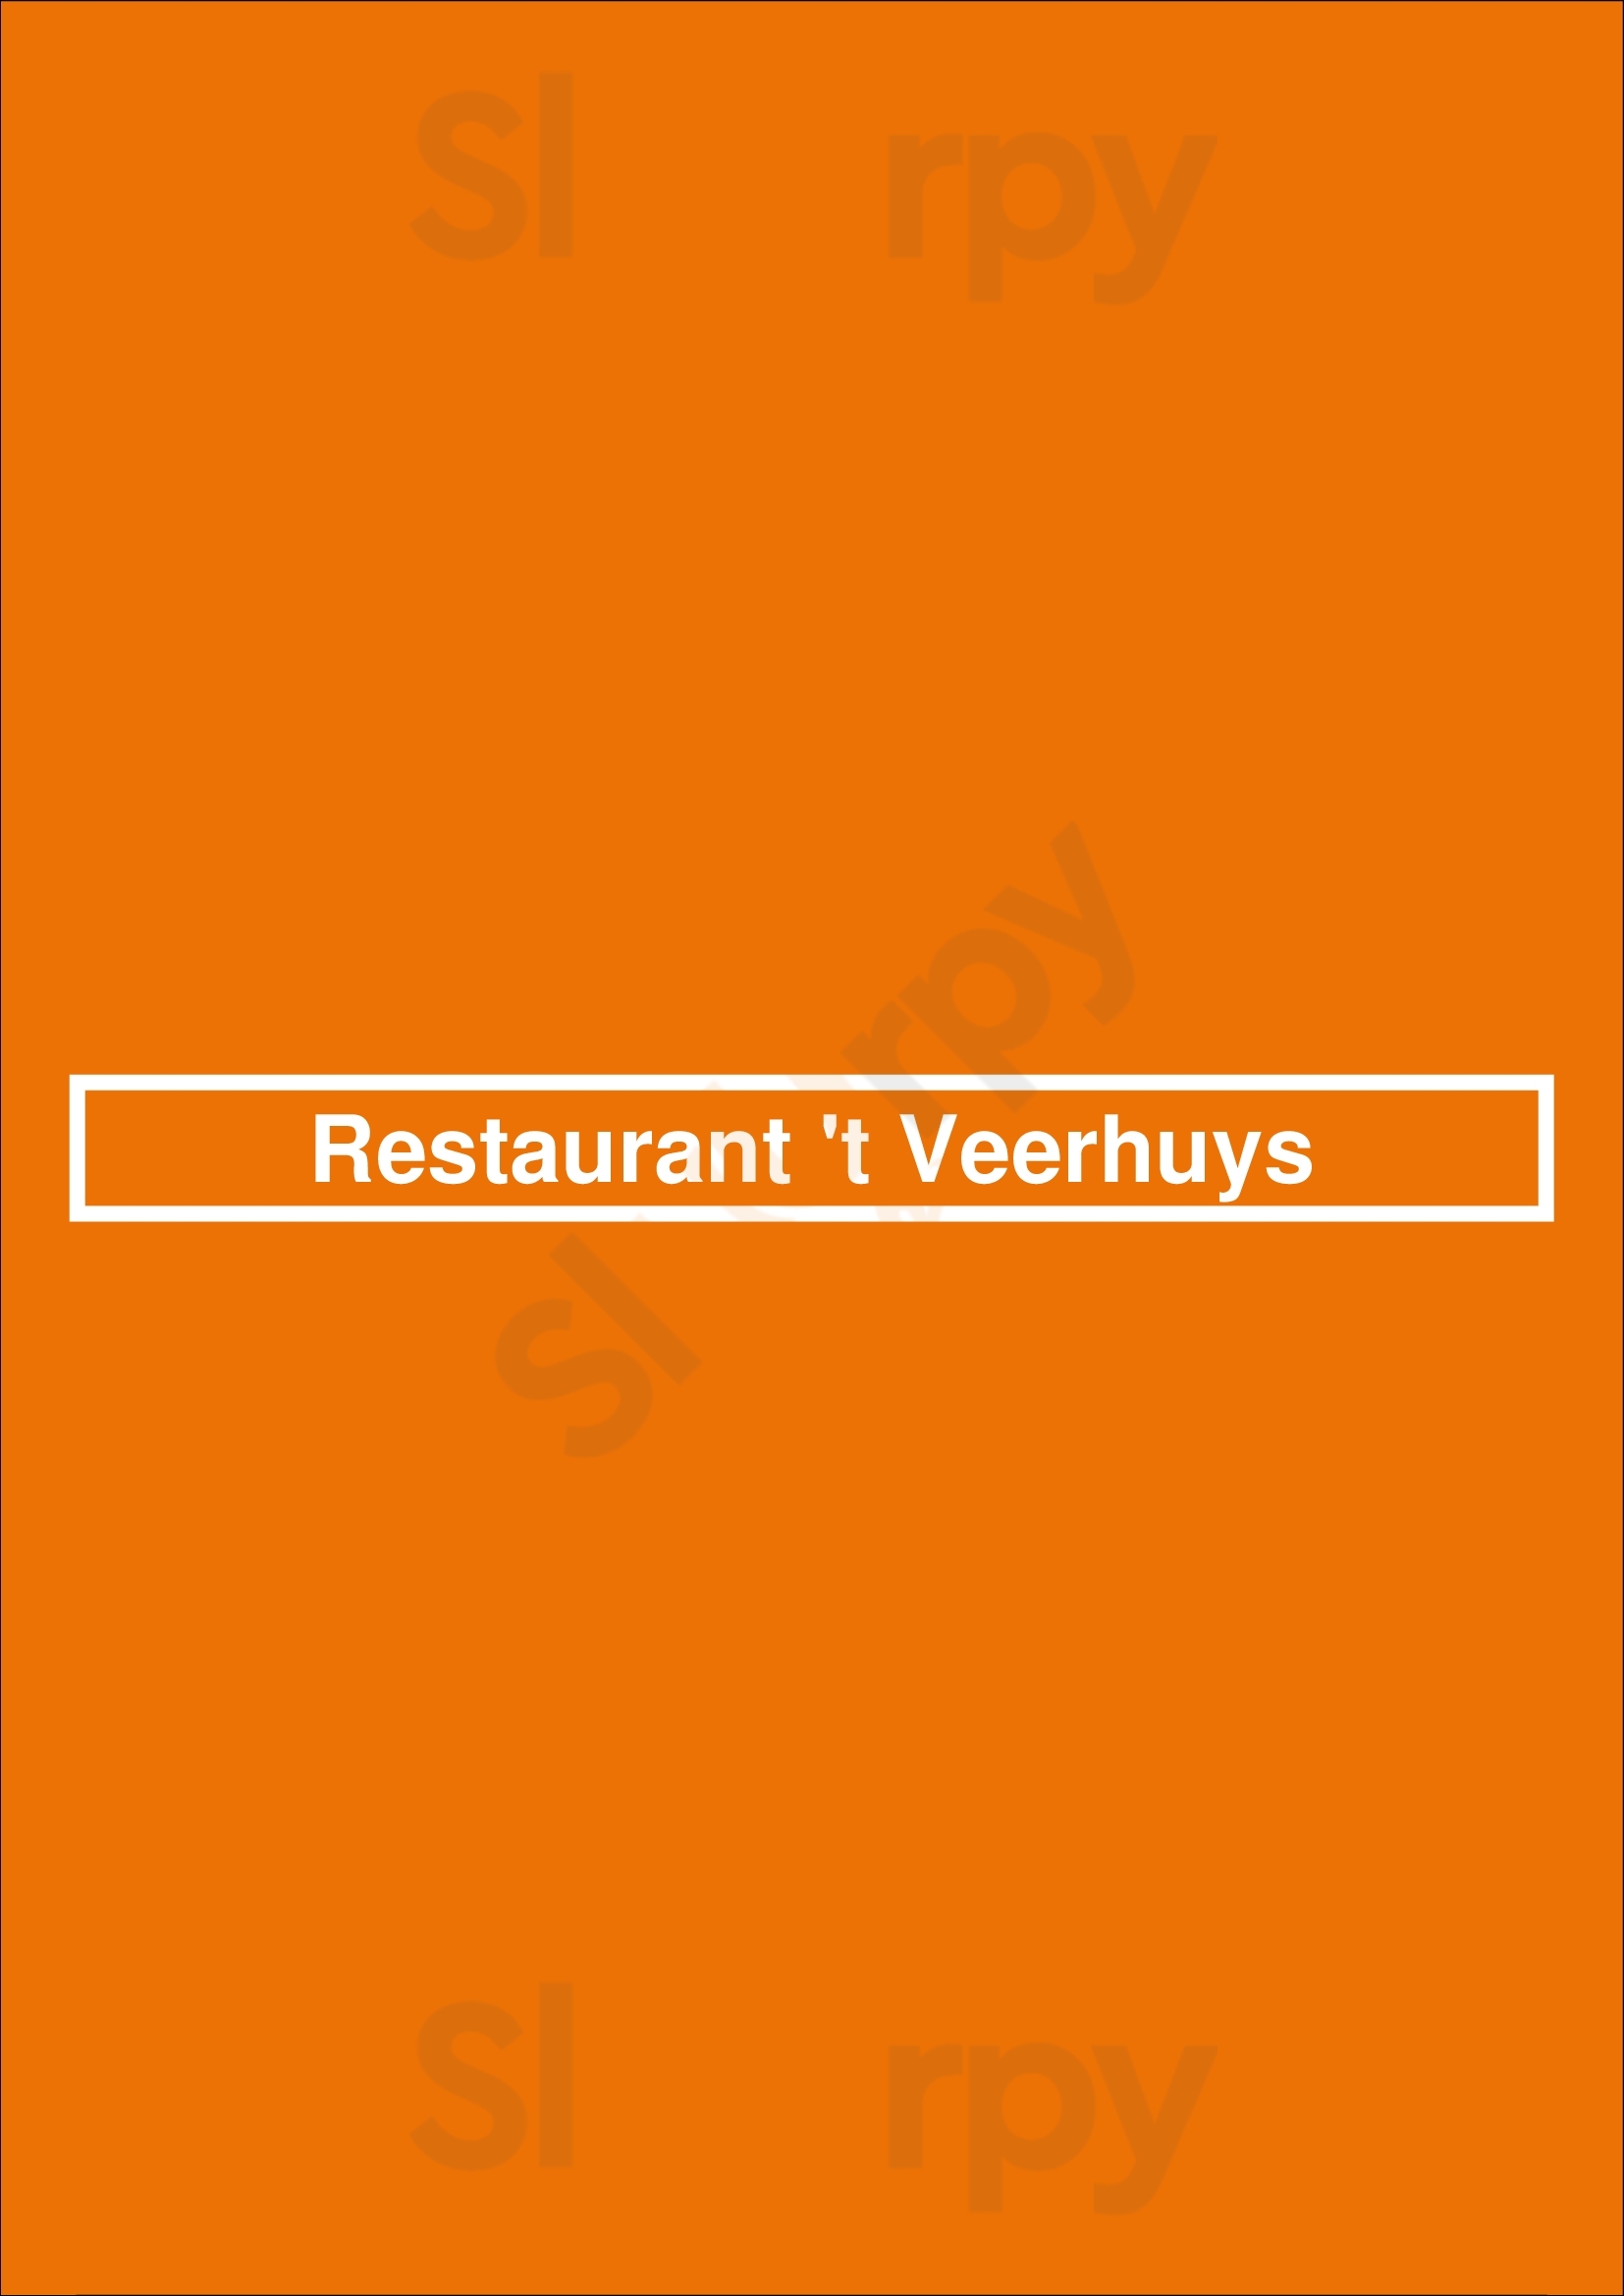 Restaurant 't Veerhuys Olst Menu - 1